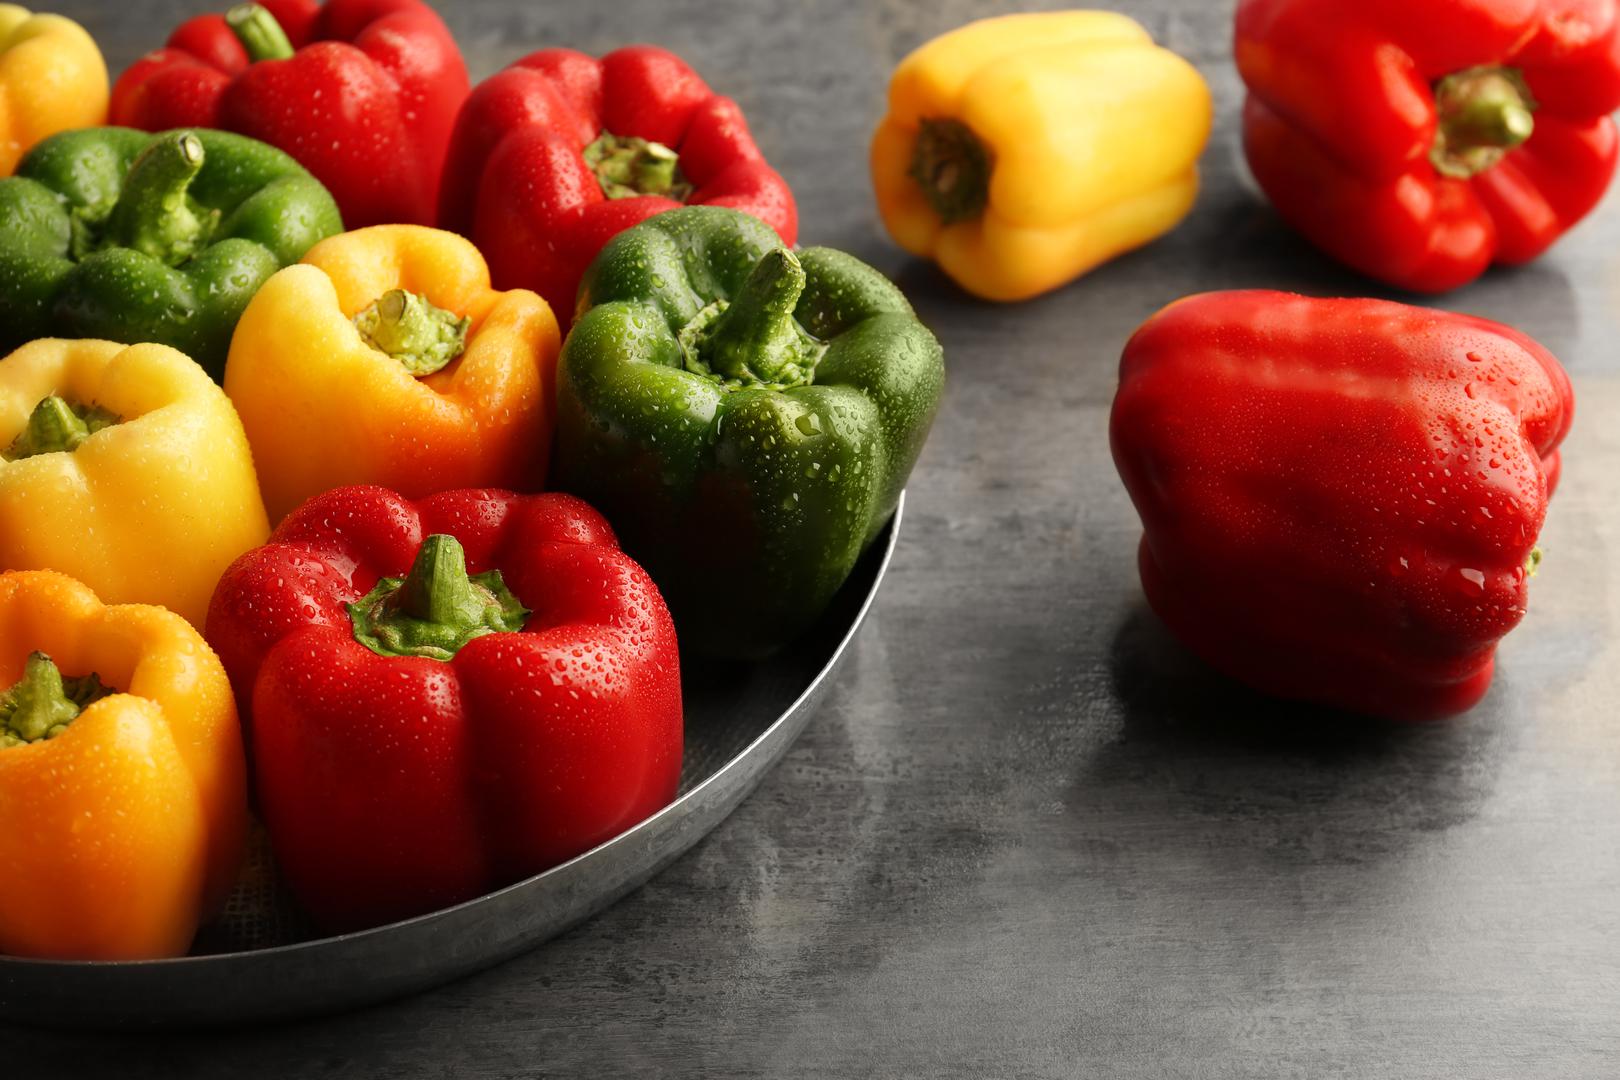 Paprike: S 92% vode, paprika je odlična ljetna namirnica. 